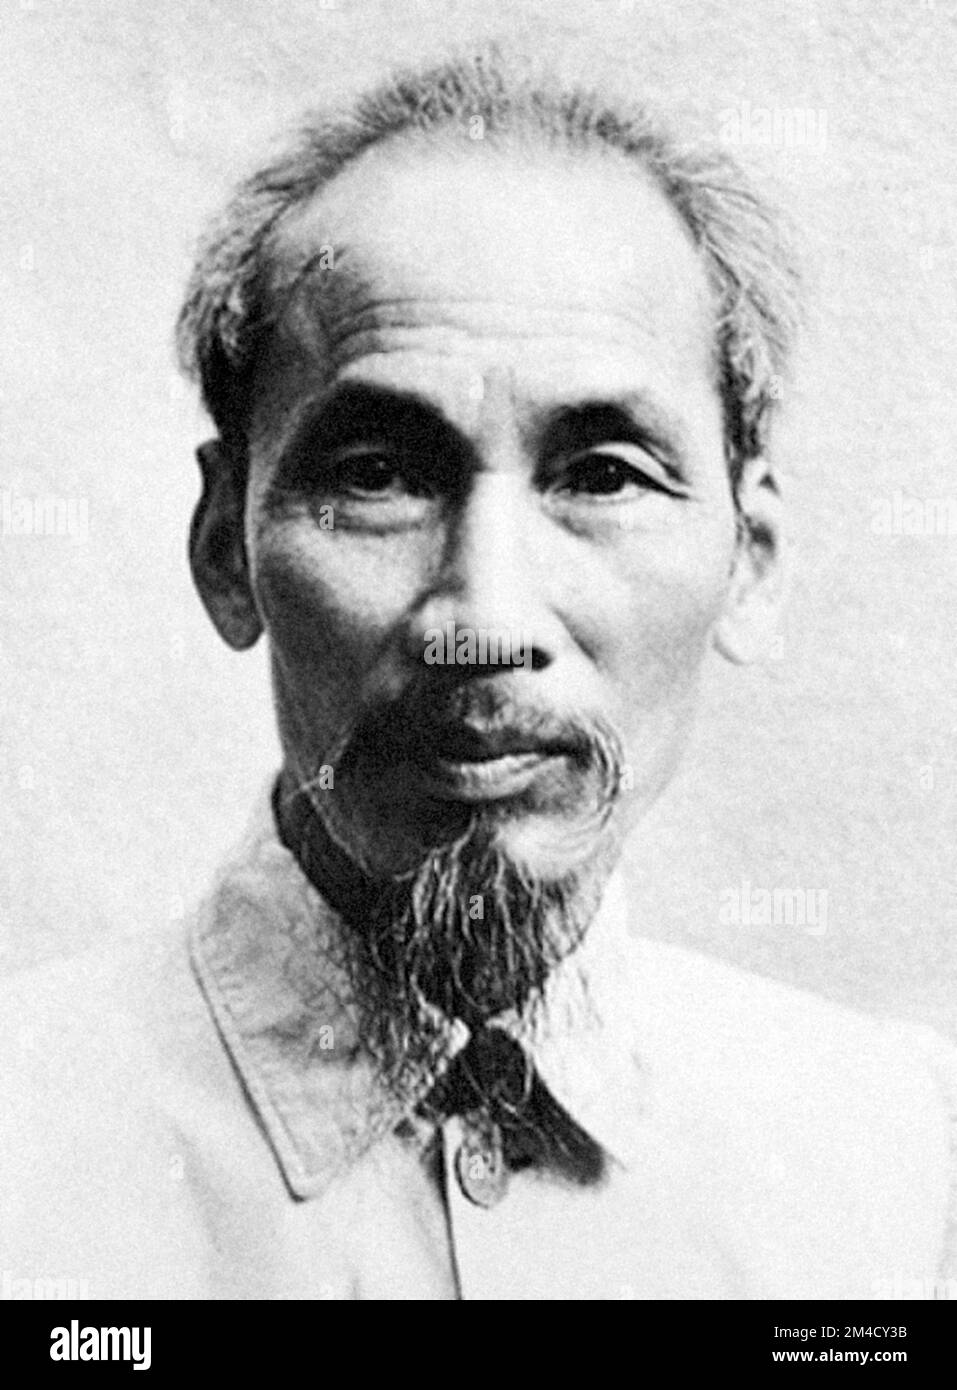 Ho-Chi-Minh. Portrait des vietnamesischen Revolutionärs und Staatsmanns, Hồ Chí Minh (geboren: Nguyễn Sinh Cung:1890-1969) Stockfoto